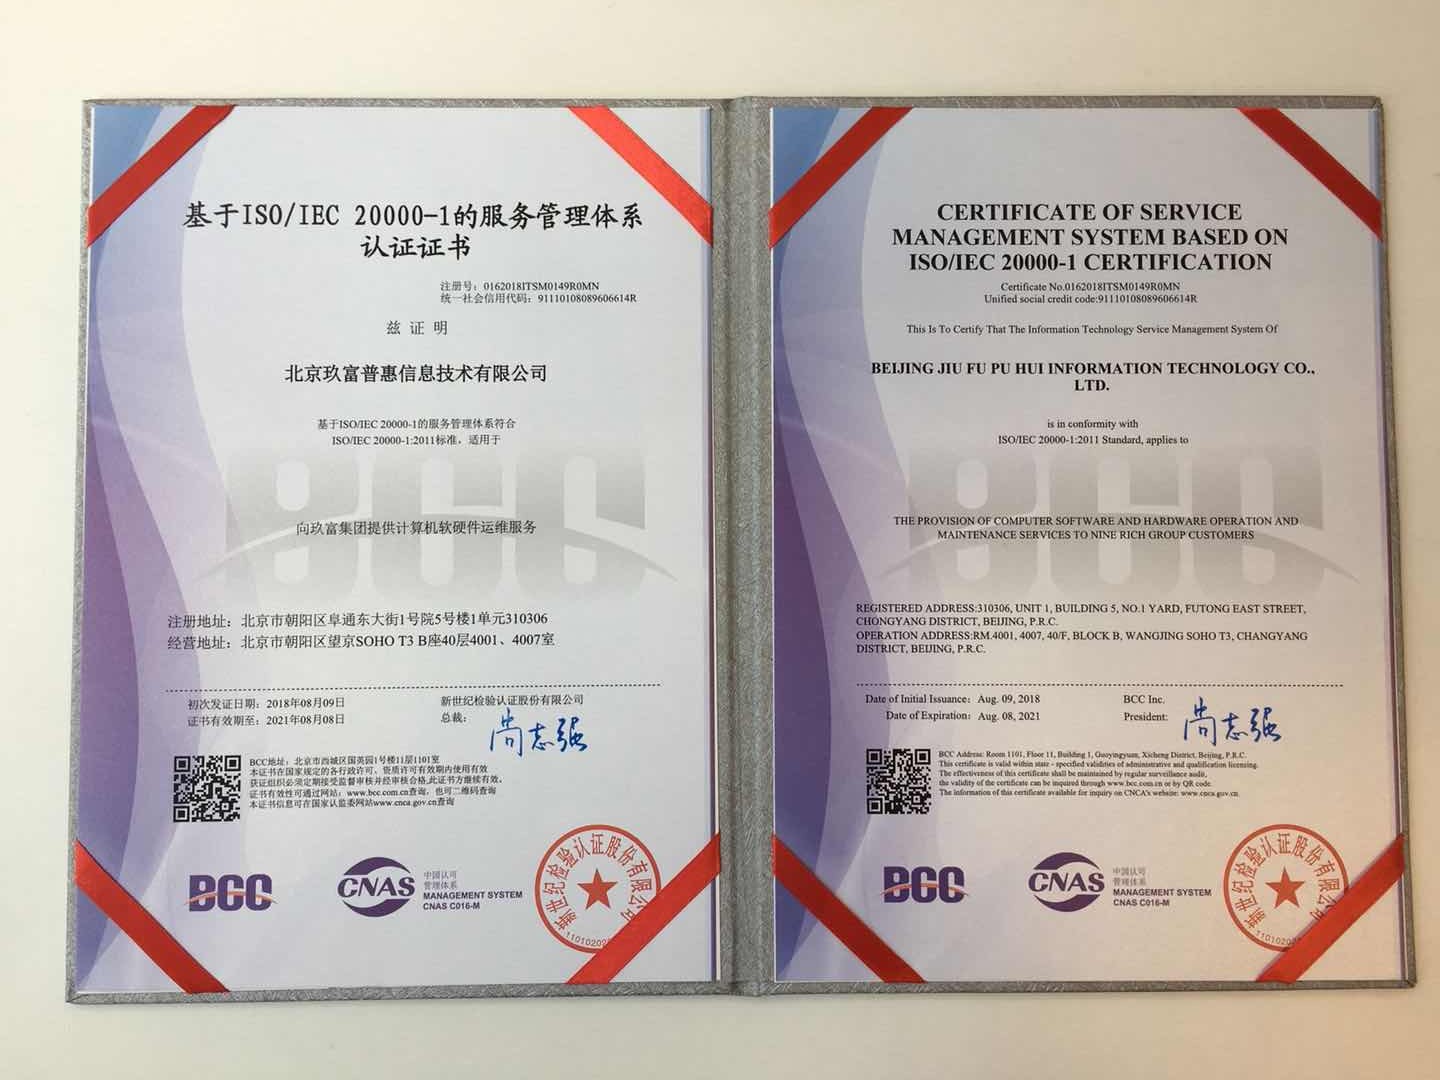 基于ISO/IEC 20000-1的服务管理体系认证证书